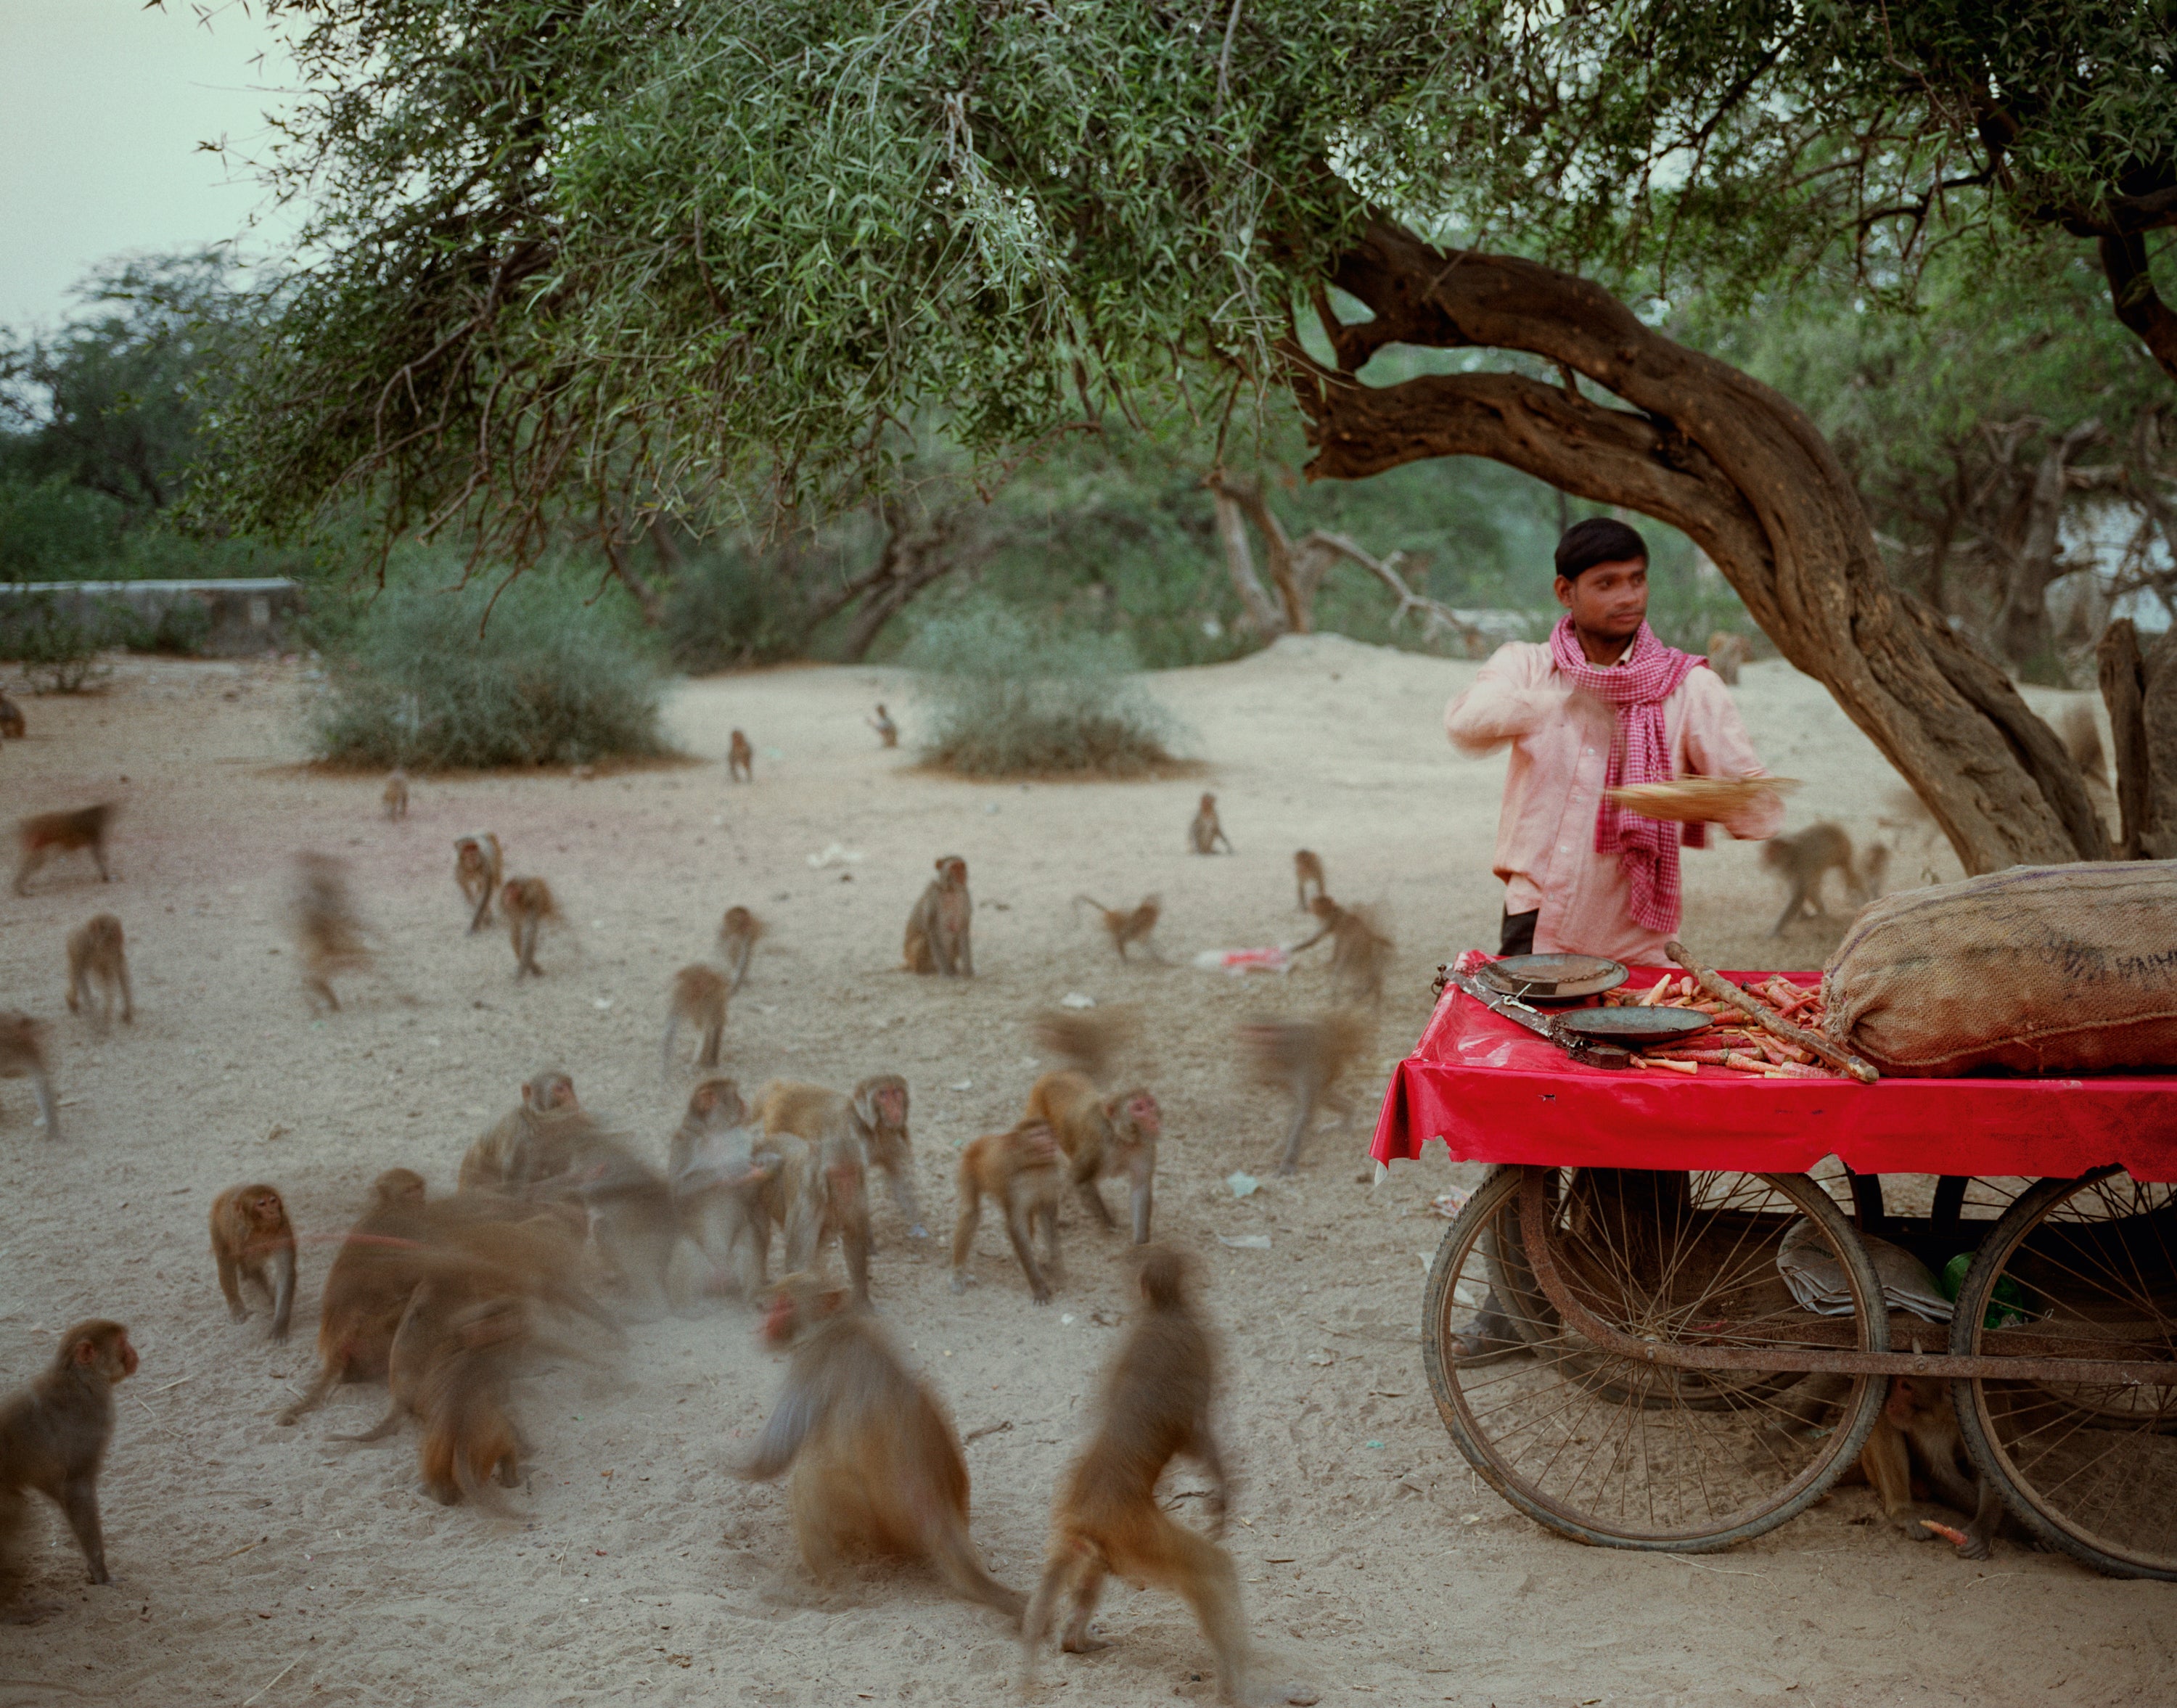 Feeding monkeys on Govardhana Hill; Uttar Pradesh #4/8